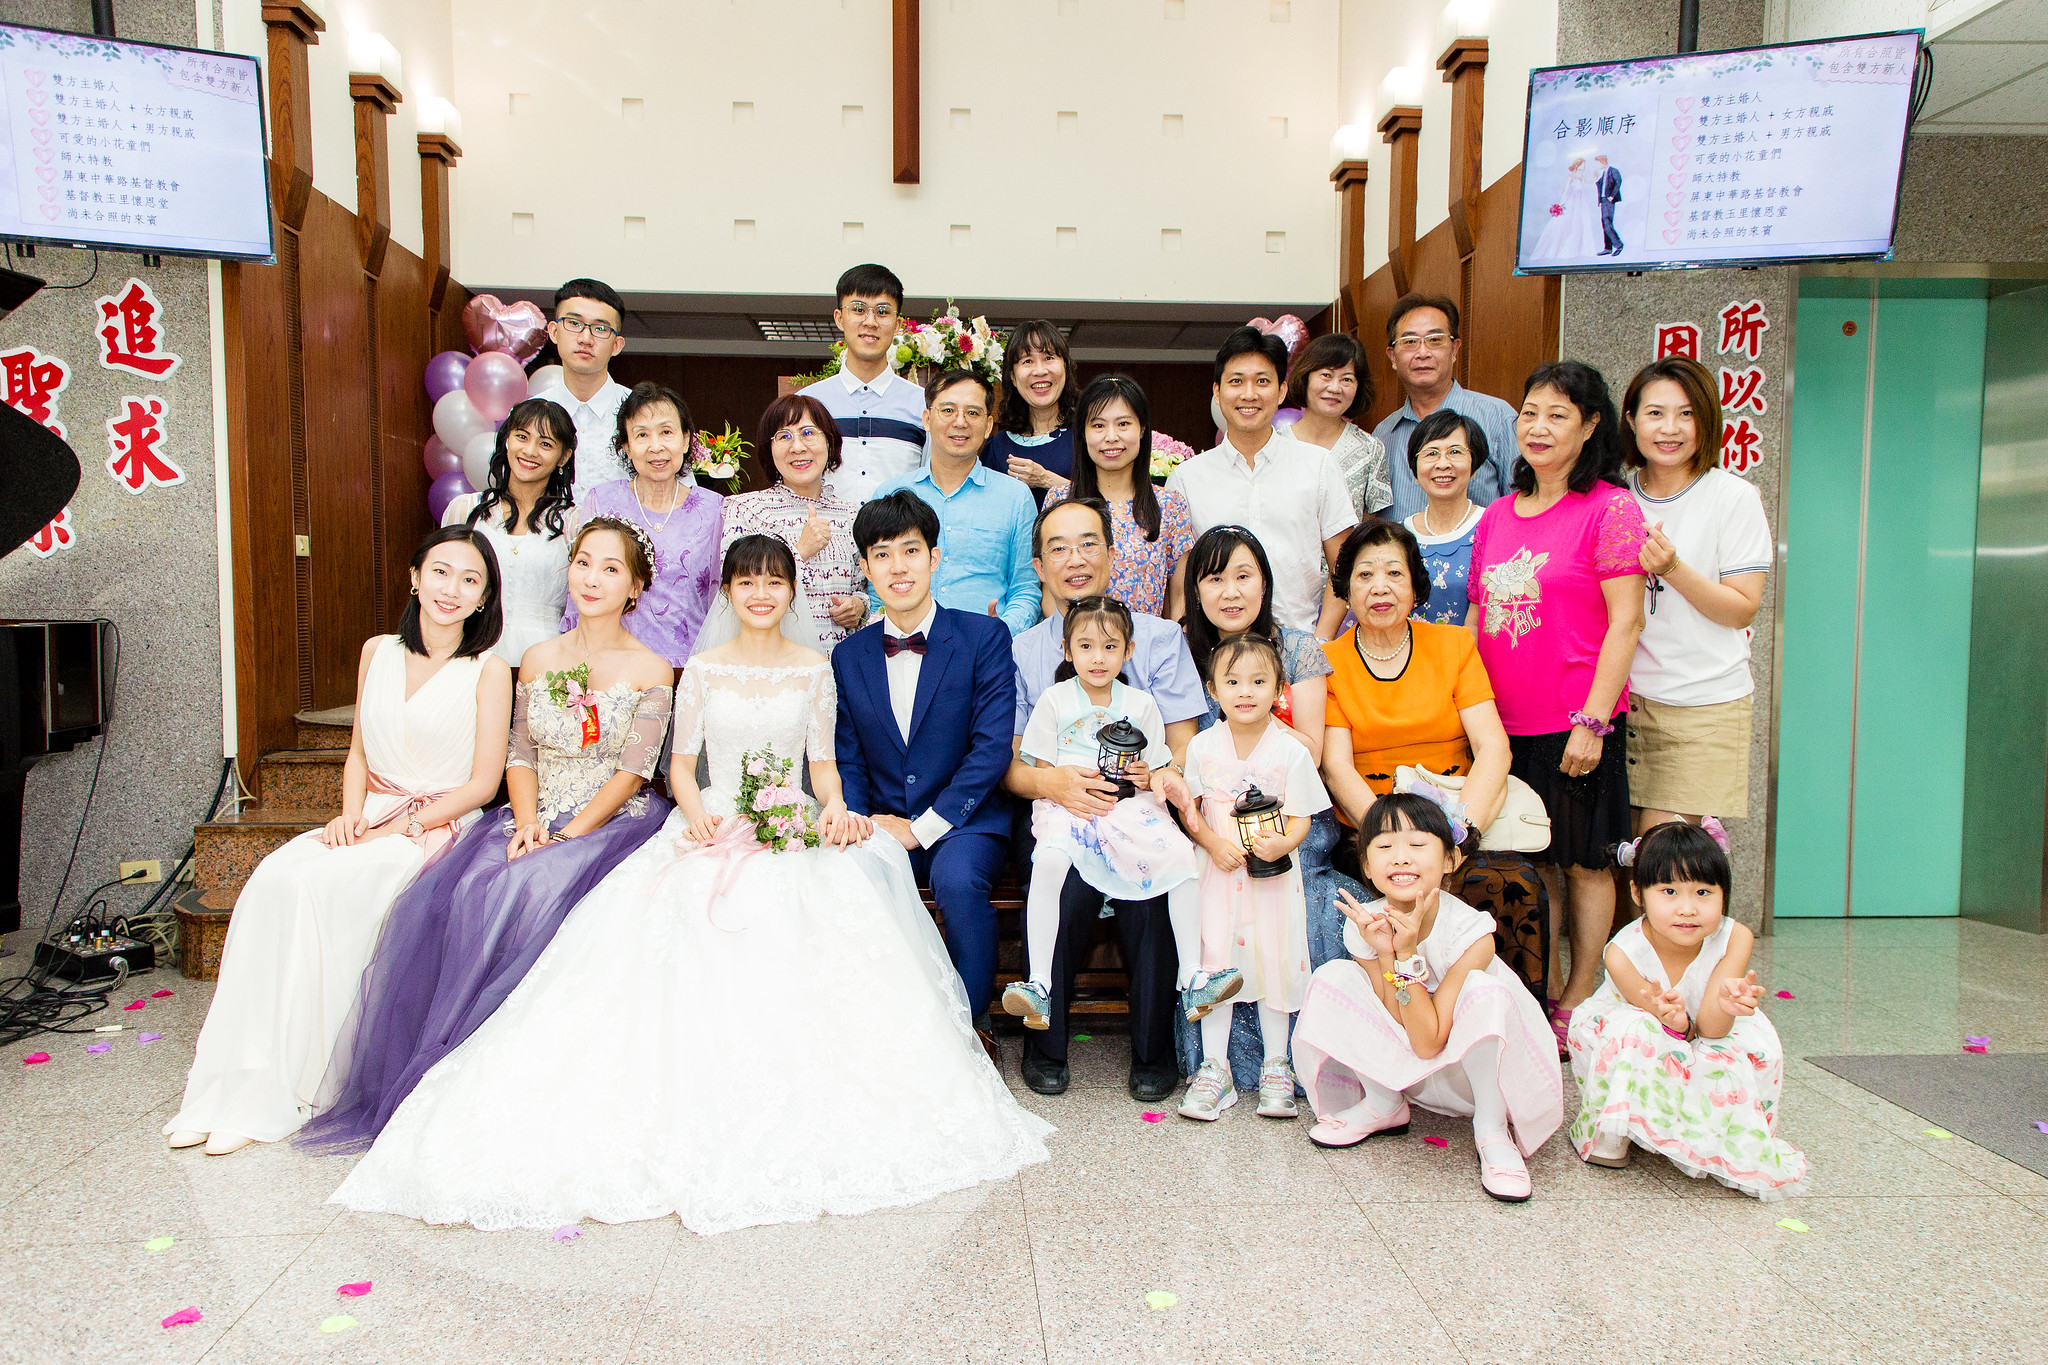 [婚攝] 名宣  & 以萱  屏東中華路基督教會證婚 | 證婚午宴  | 婚禮紀錄